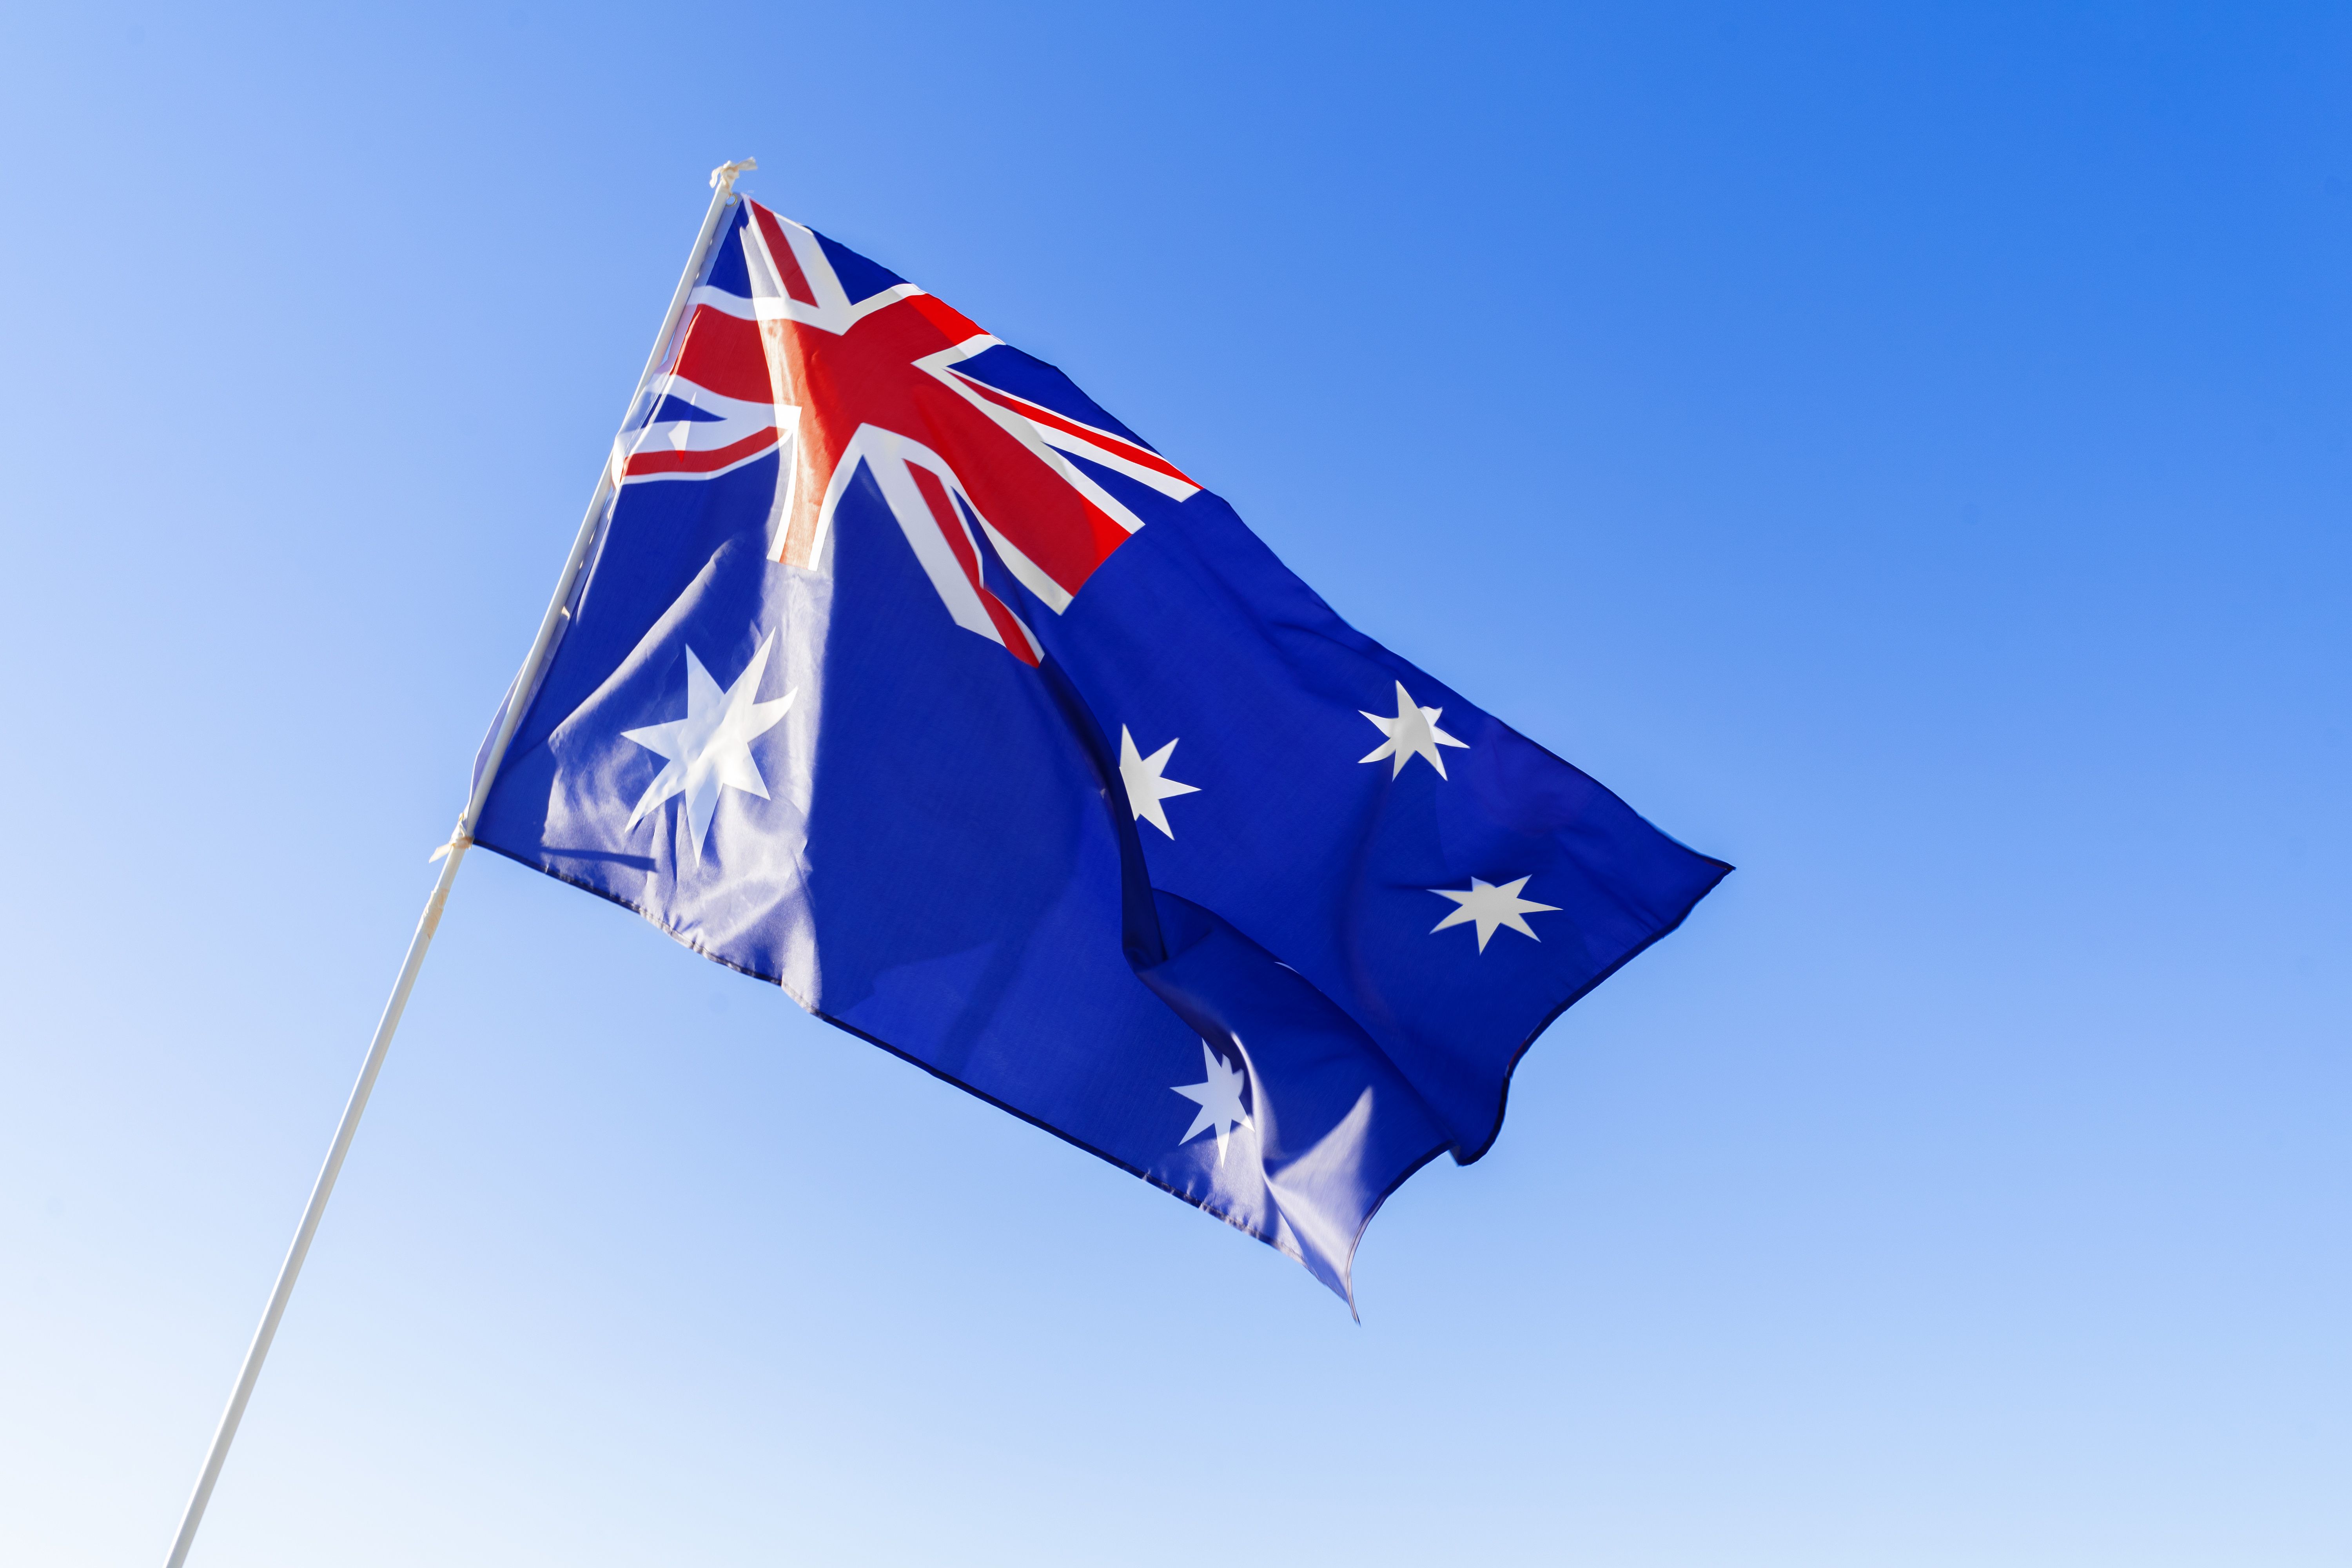 flag-of-australia-waving-against-blue-sky-2023-11-27-05-08-47-utc.jpg